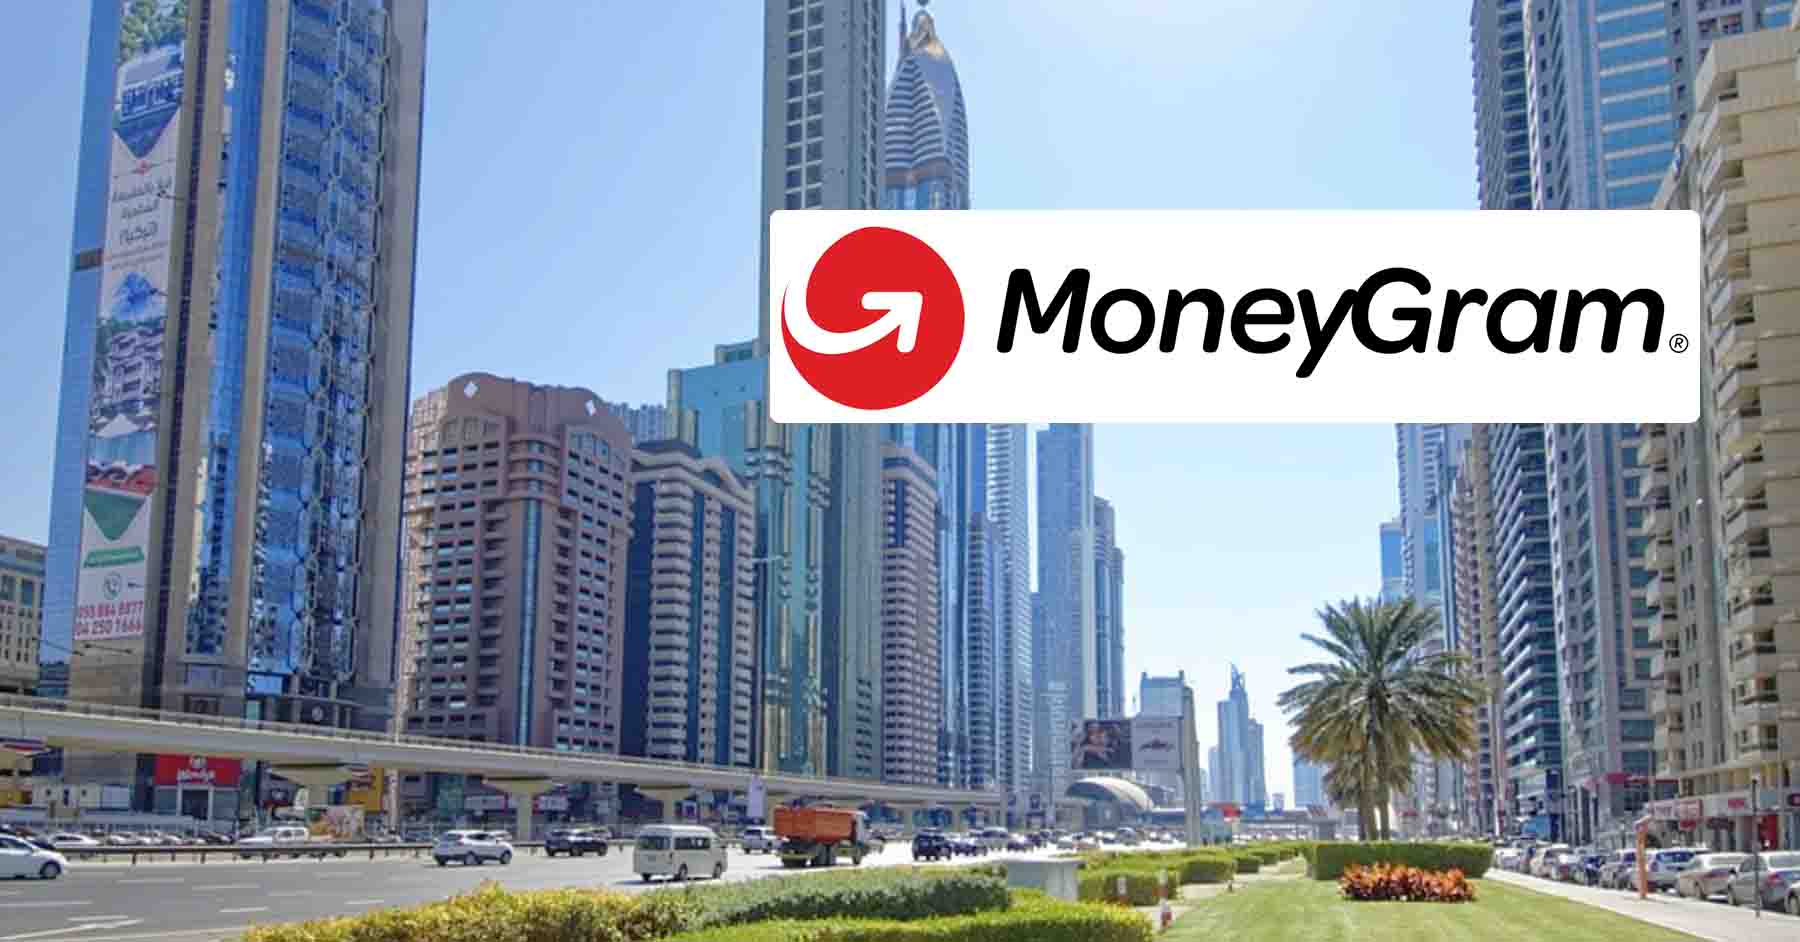 List of Moneygram Locations in Dubai and UAE Dubai OFW